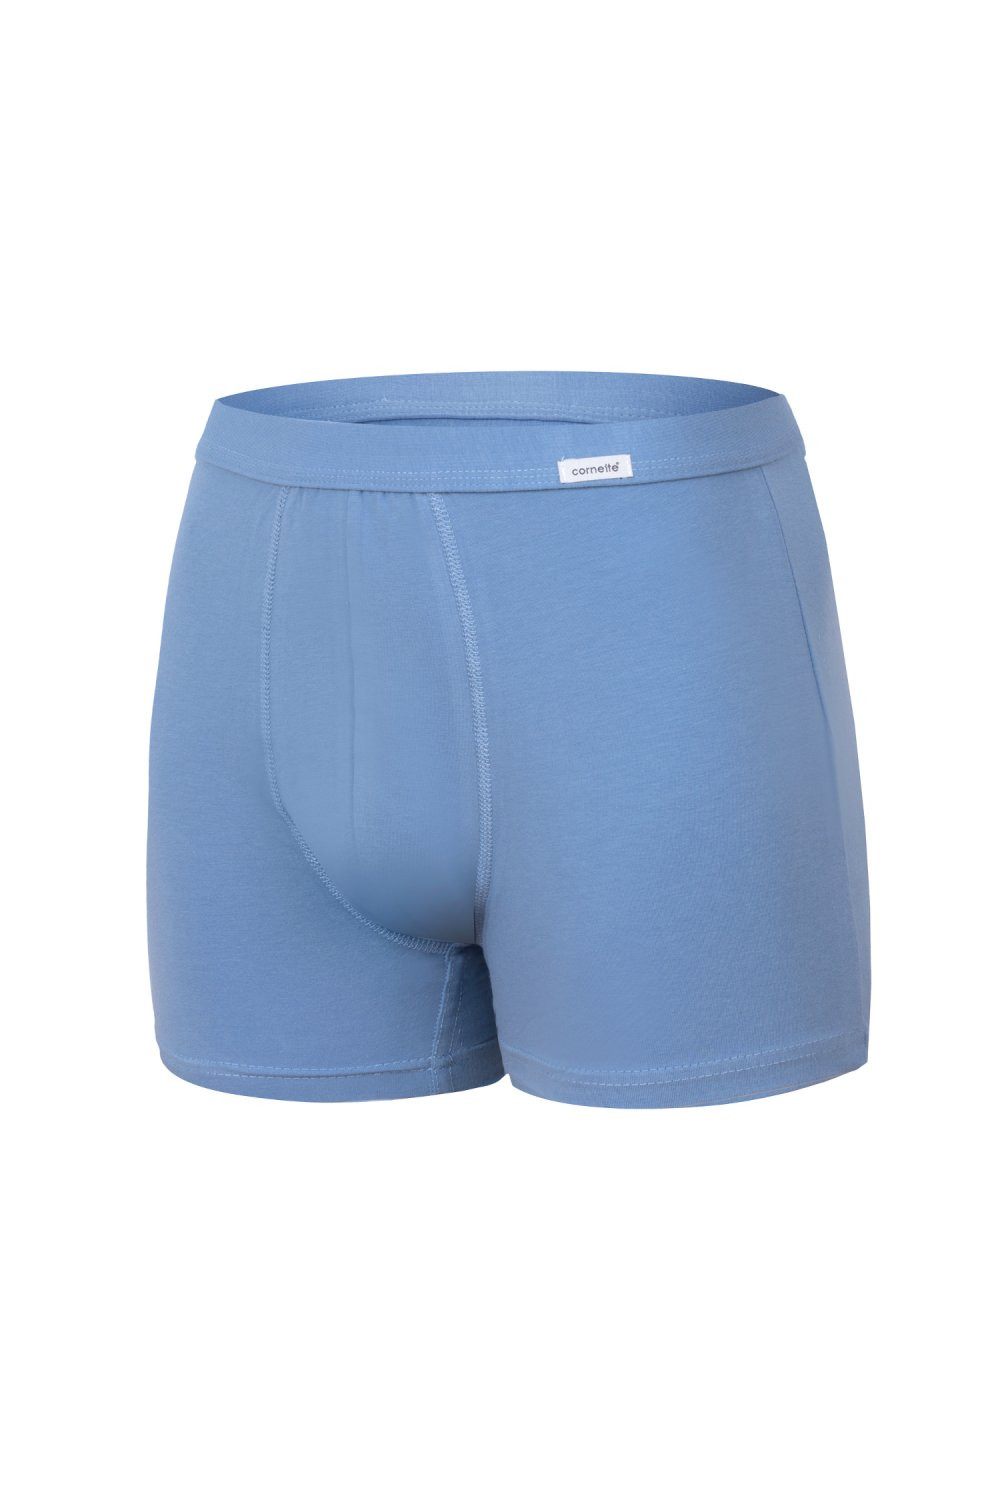 Pánské boxerky 092 Authentic plus light blue - CORNETTE světle modrá 4XL